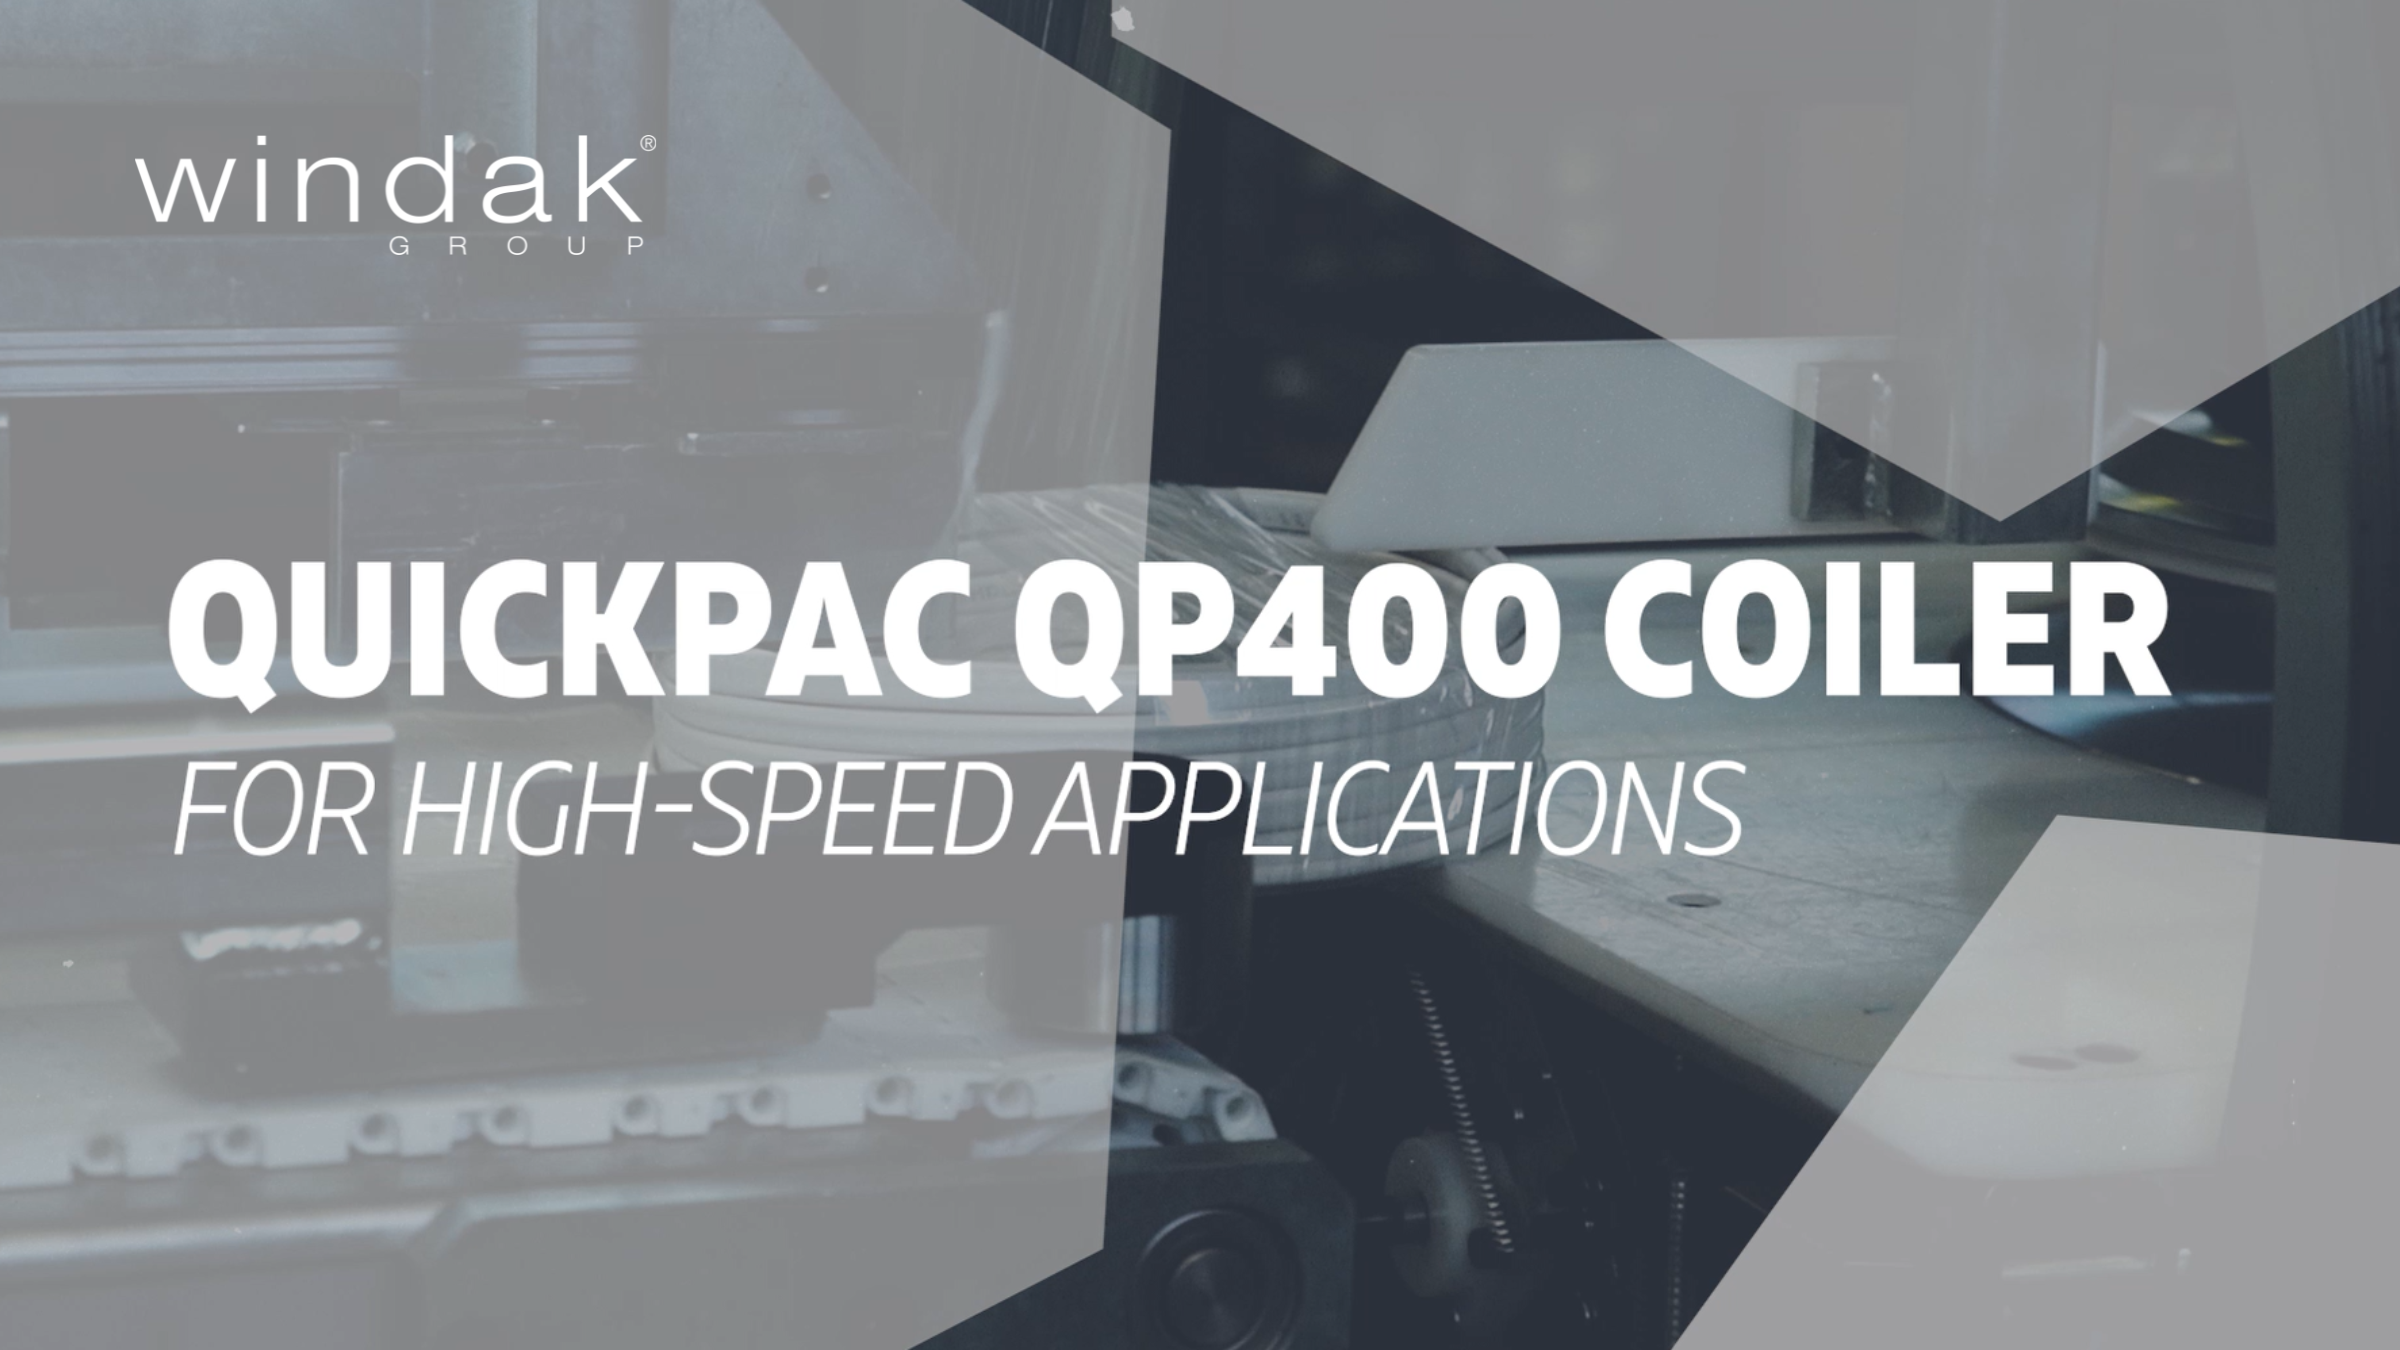 Windak’s QuickPac Coiler